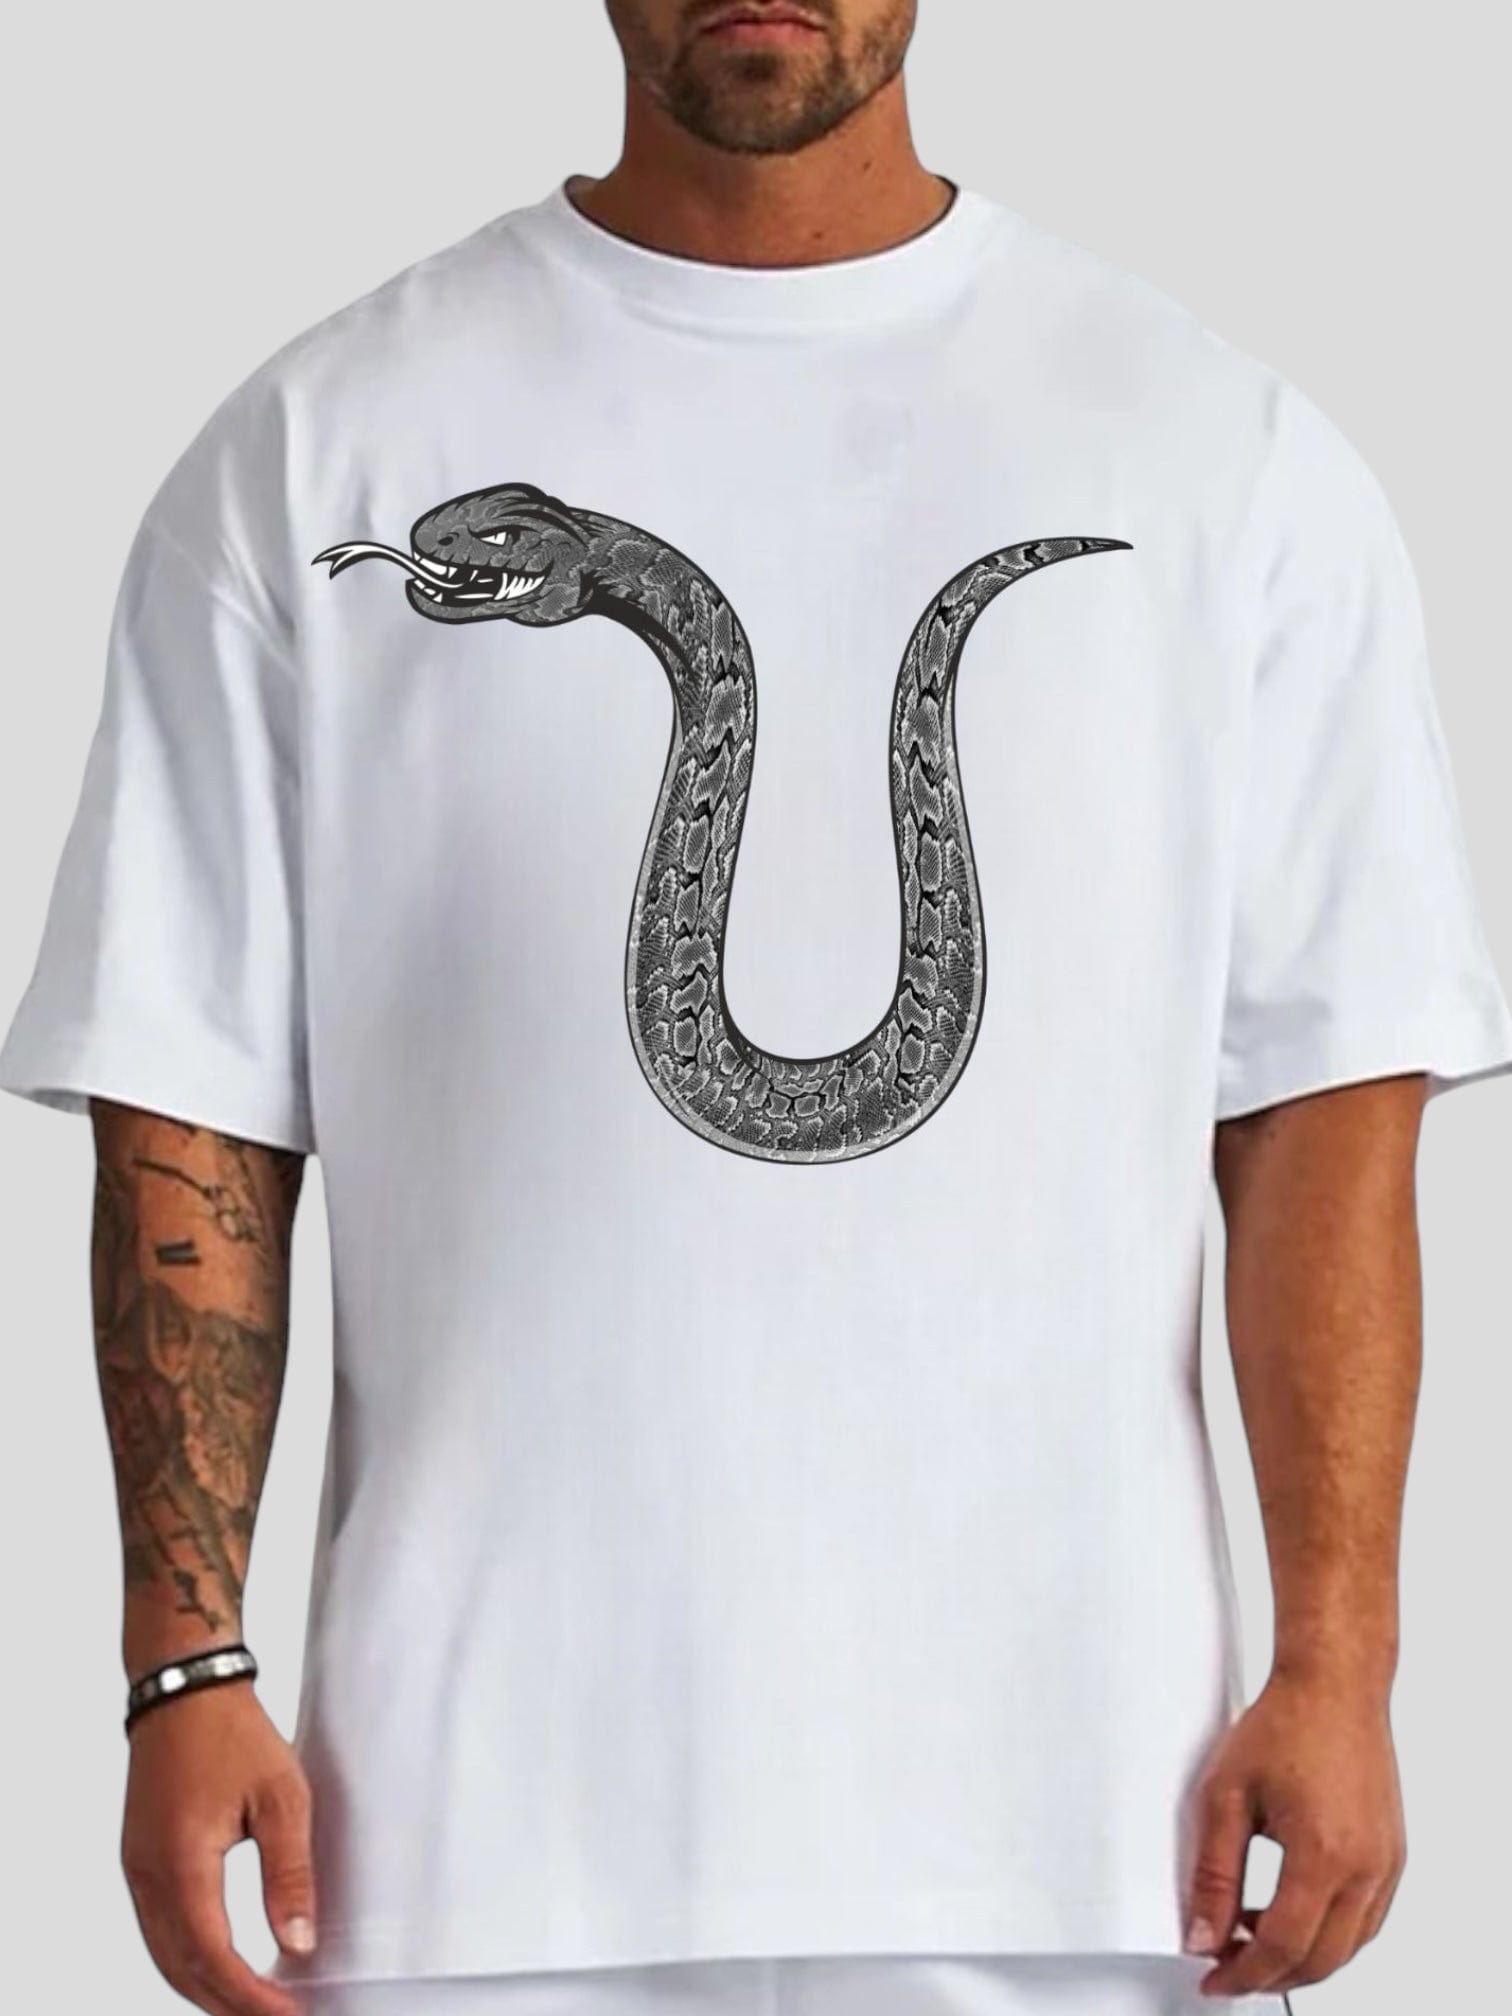 Urbandel tshits Urbandel U Snake Graphic T-shirt